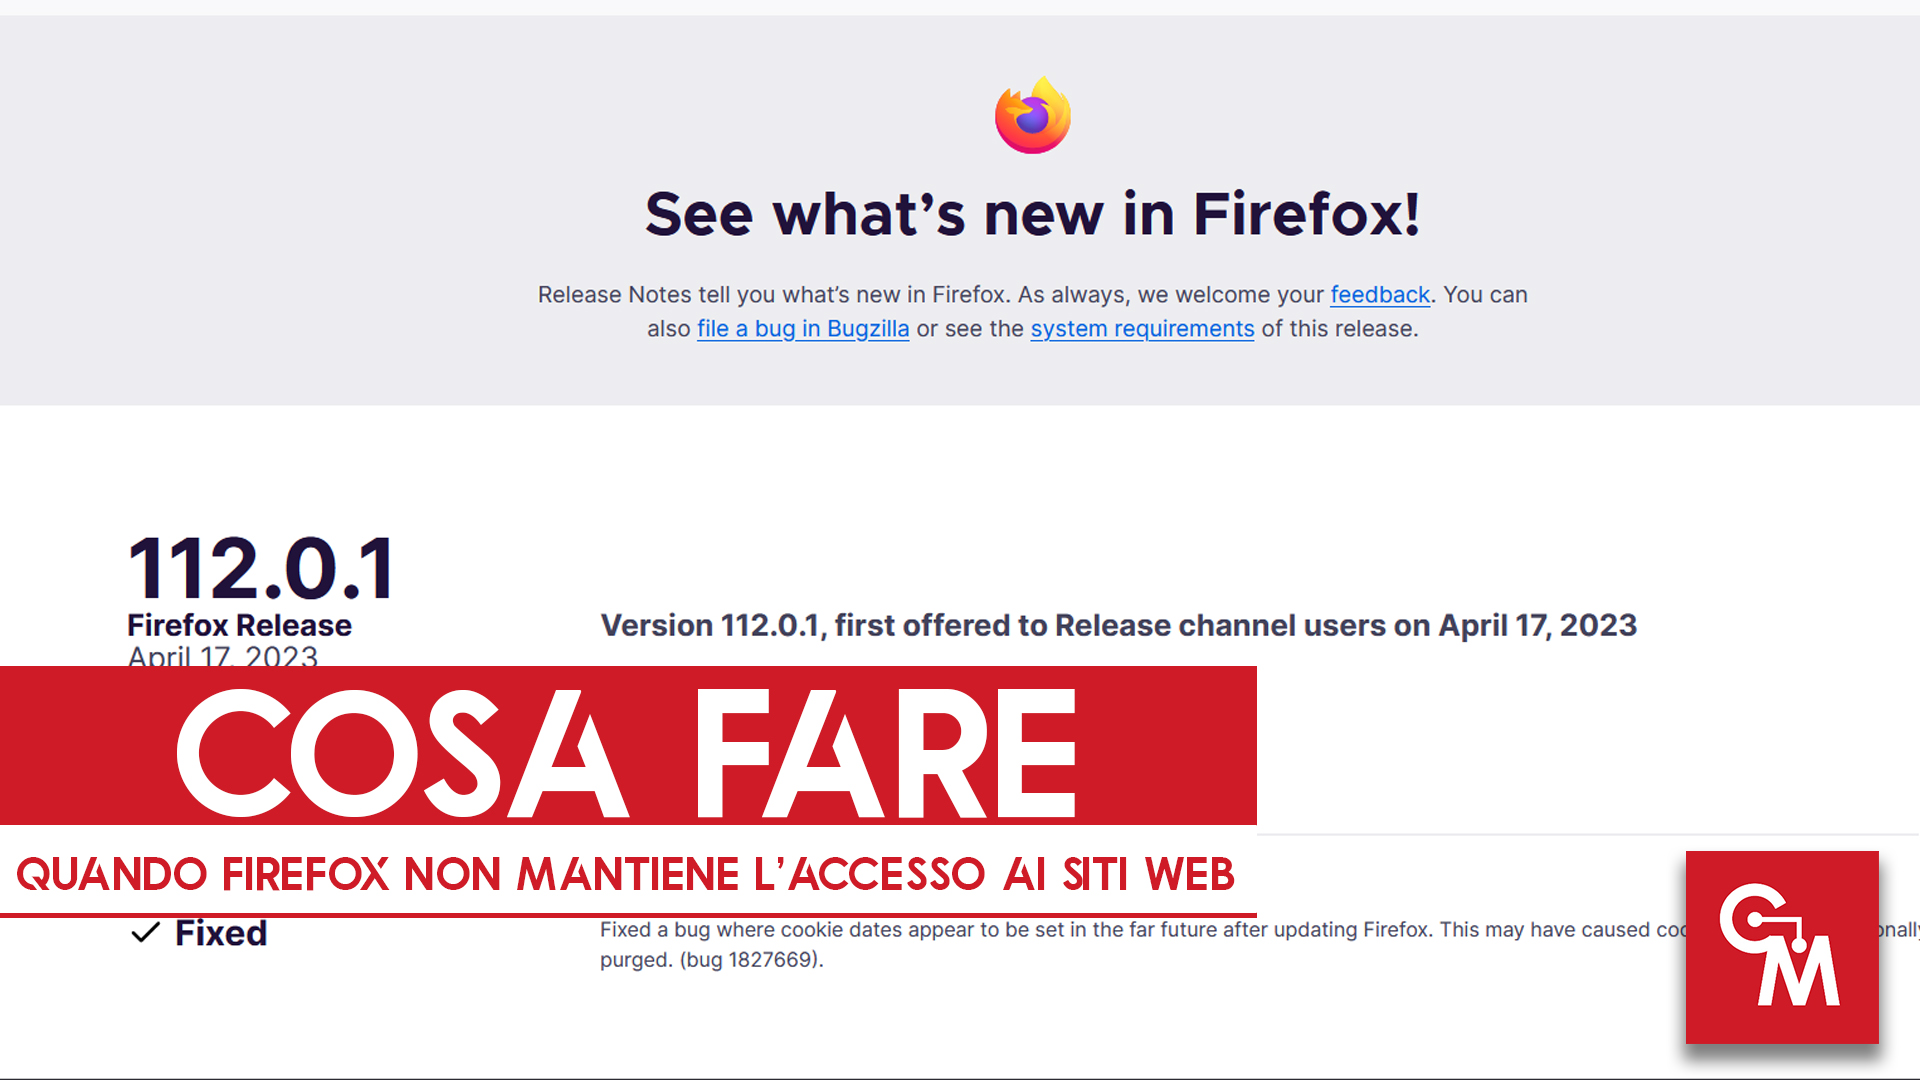 Cosa fare quando Firefox non mantiene l’accesso ai siti web